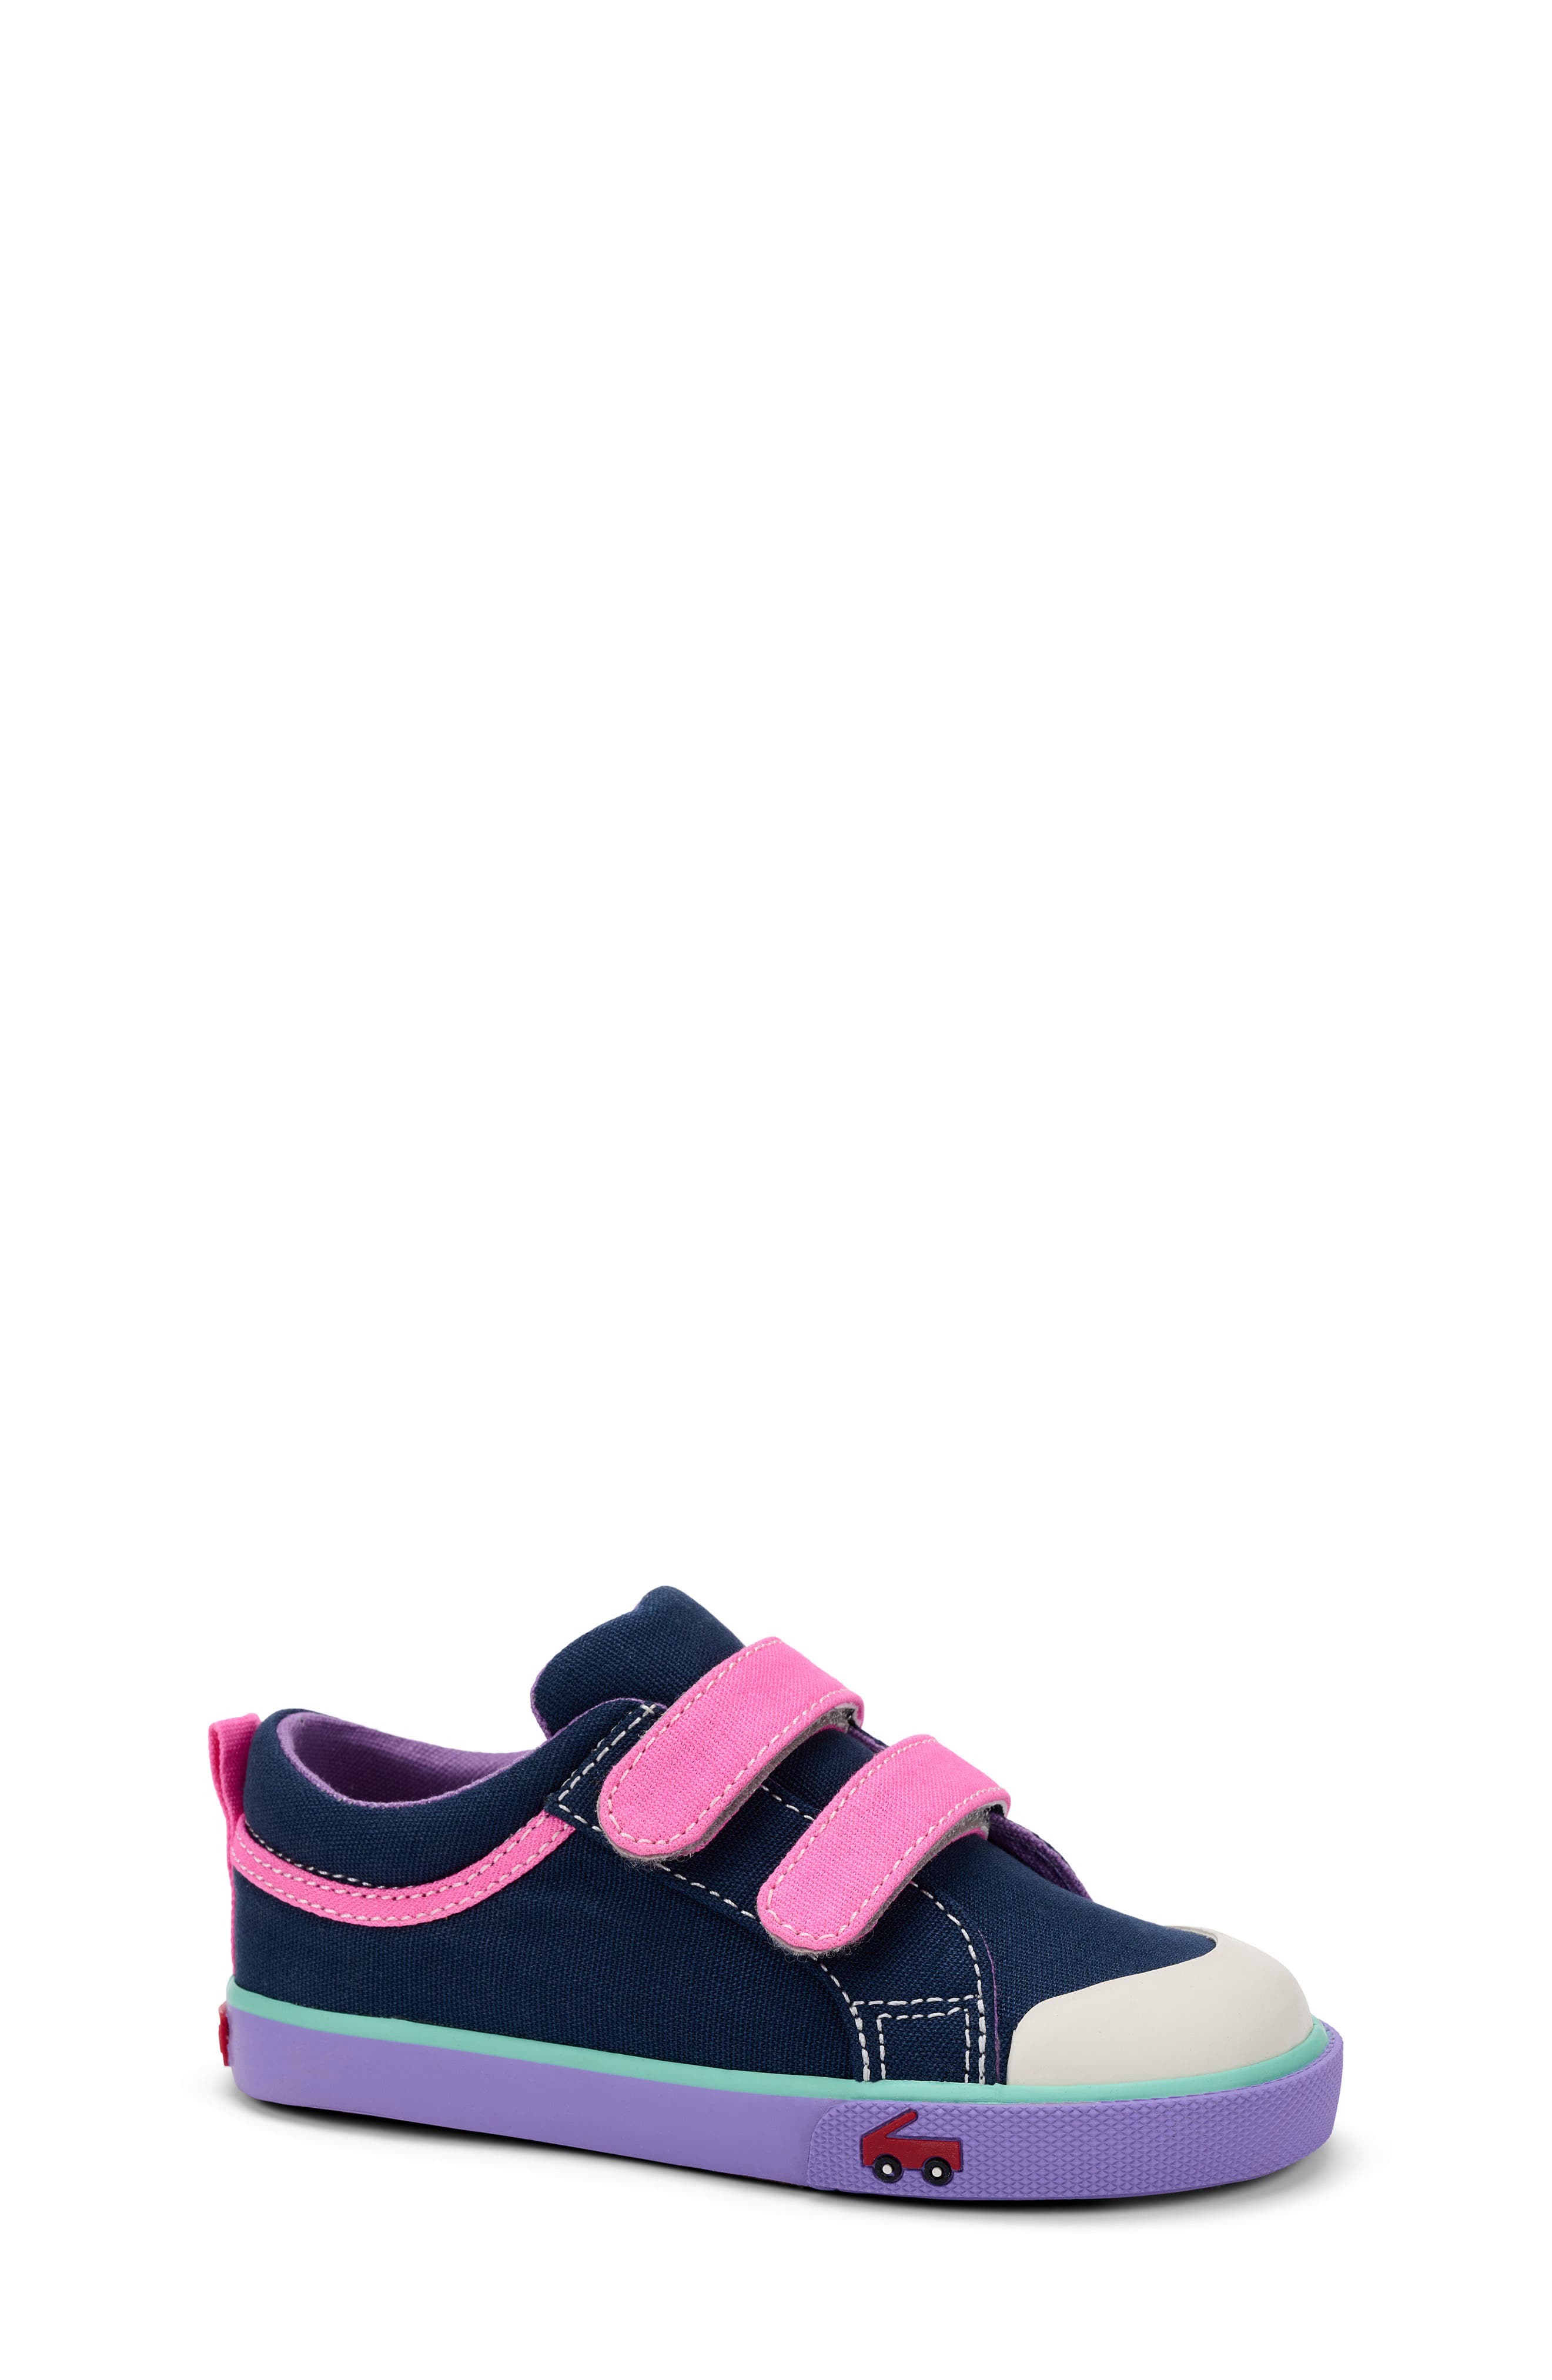 Toddler Boys' See Kai Run Basics Monteray II Sneakers Size 8 